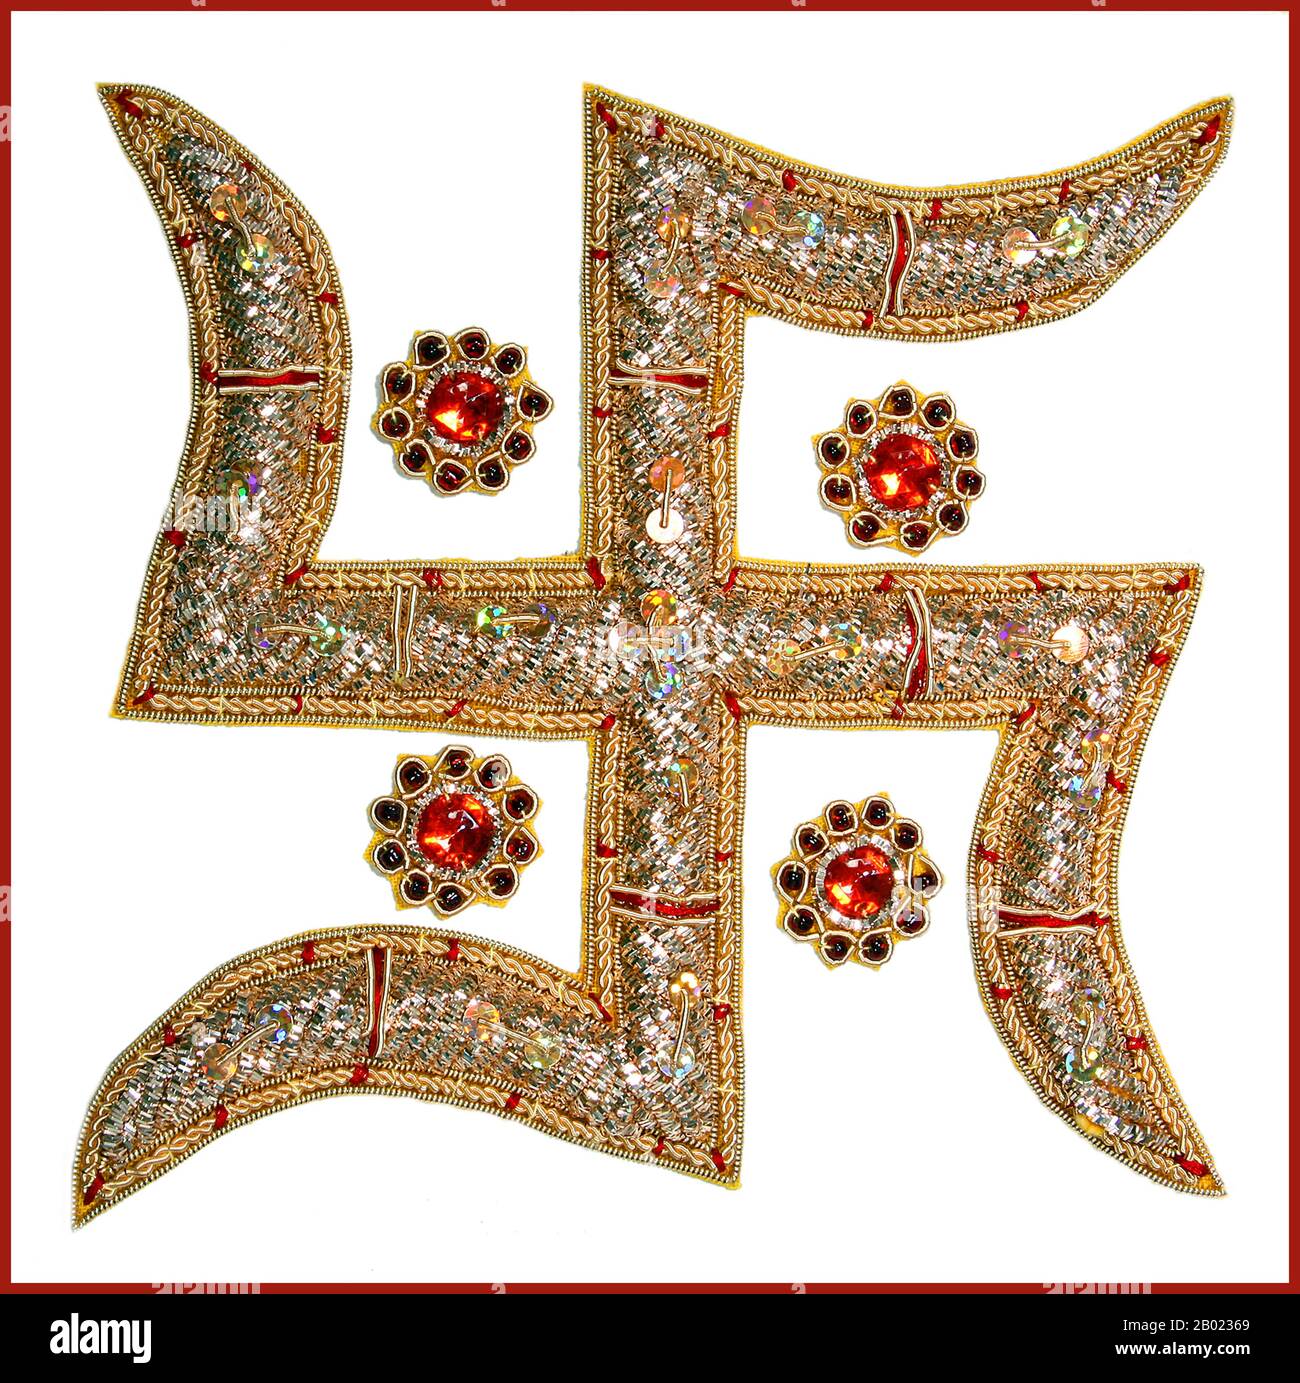 Der erste archäologische Nachweis von Hakenkreuzförmigen Verzierungen geht auf die Indus-Valley-Zivilisation des Alten Indien sowie Die Klassische Antike zurück. Hakenkreuze wurden auch in verschiedenen anderen alten Zivilisationen auf der ganzen Welt verwendet. Das Hakenkreuz bleibt in den indischen Religionen, insbesondere im Hinduismus, Buddhismus und Jainismus, weit verbreitet, vor allem als tantrisches Symbol, um Shakti oder das heilige Symbol der Glücksbringerei zu erwecken. Das Wort 'Swastika' stammt aus dem Sanskrit und bedeutet wörtlich 'gut sein'. Trotz der Verwendung des Namens Hakenkreuz für das NS-hakenkreuz oder "Hakenkreuz", die Sout Stockfoto